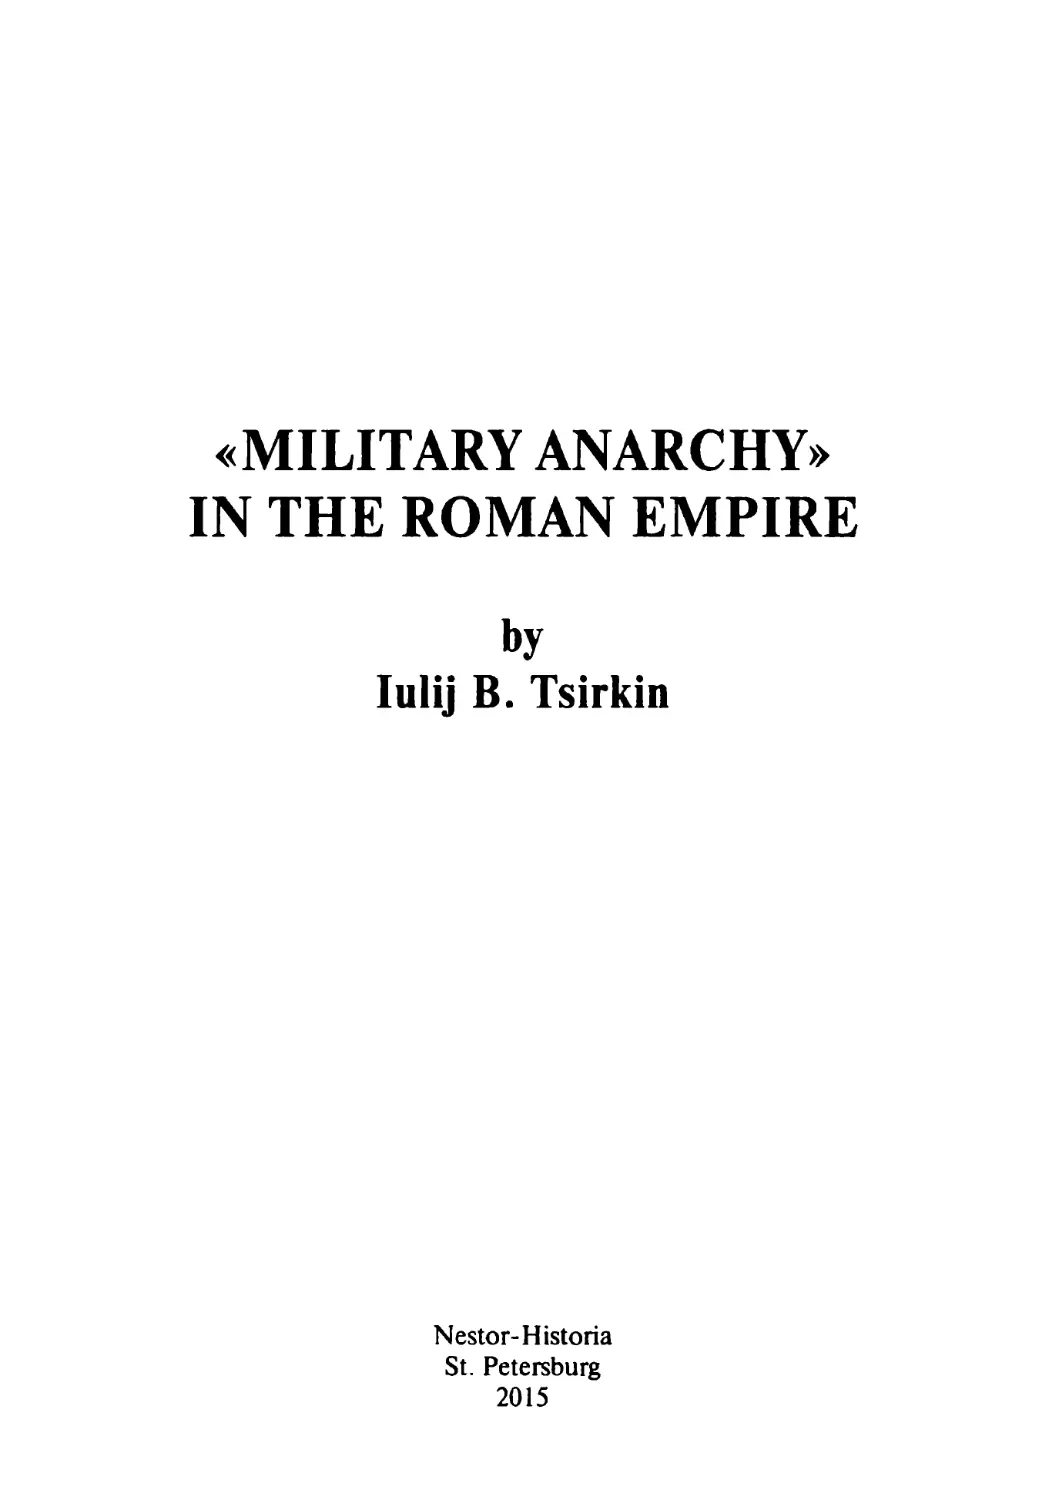 Ю. Б. Циркин. «Военная анархия» в Римской империи - 2015